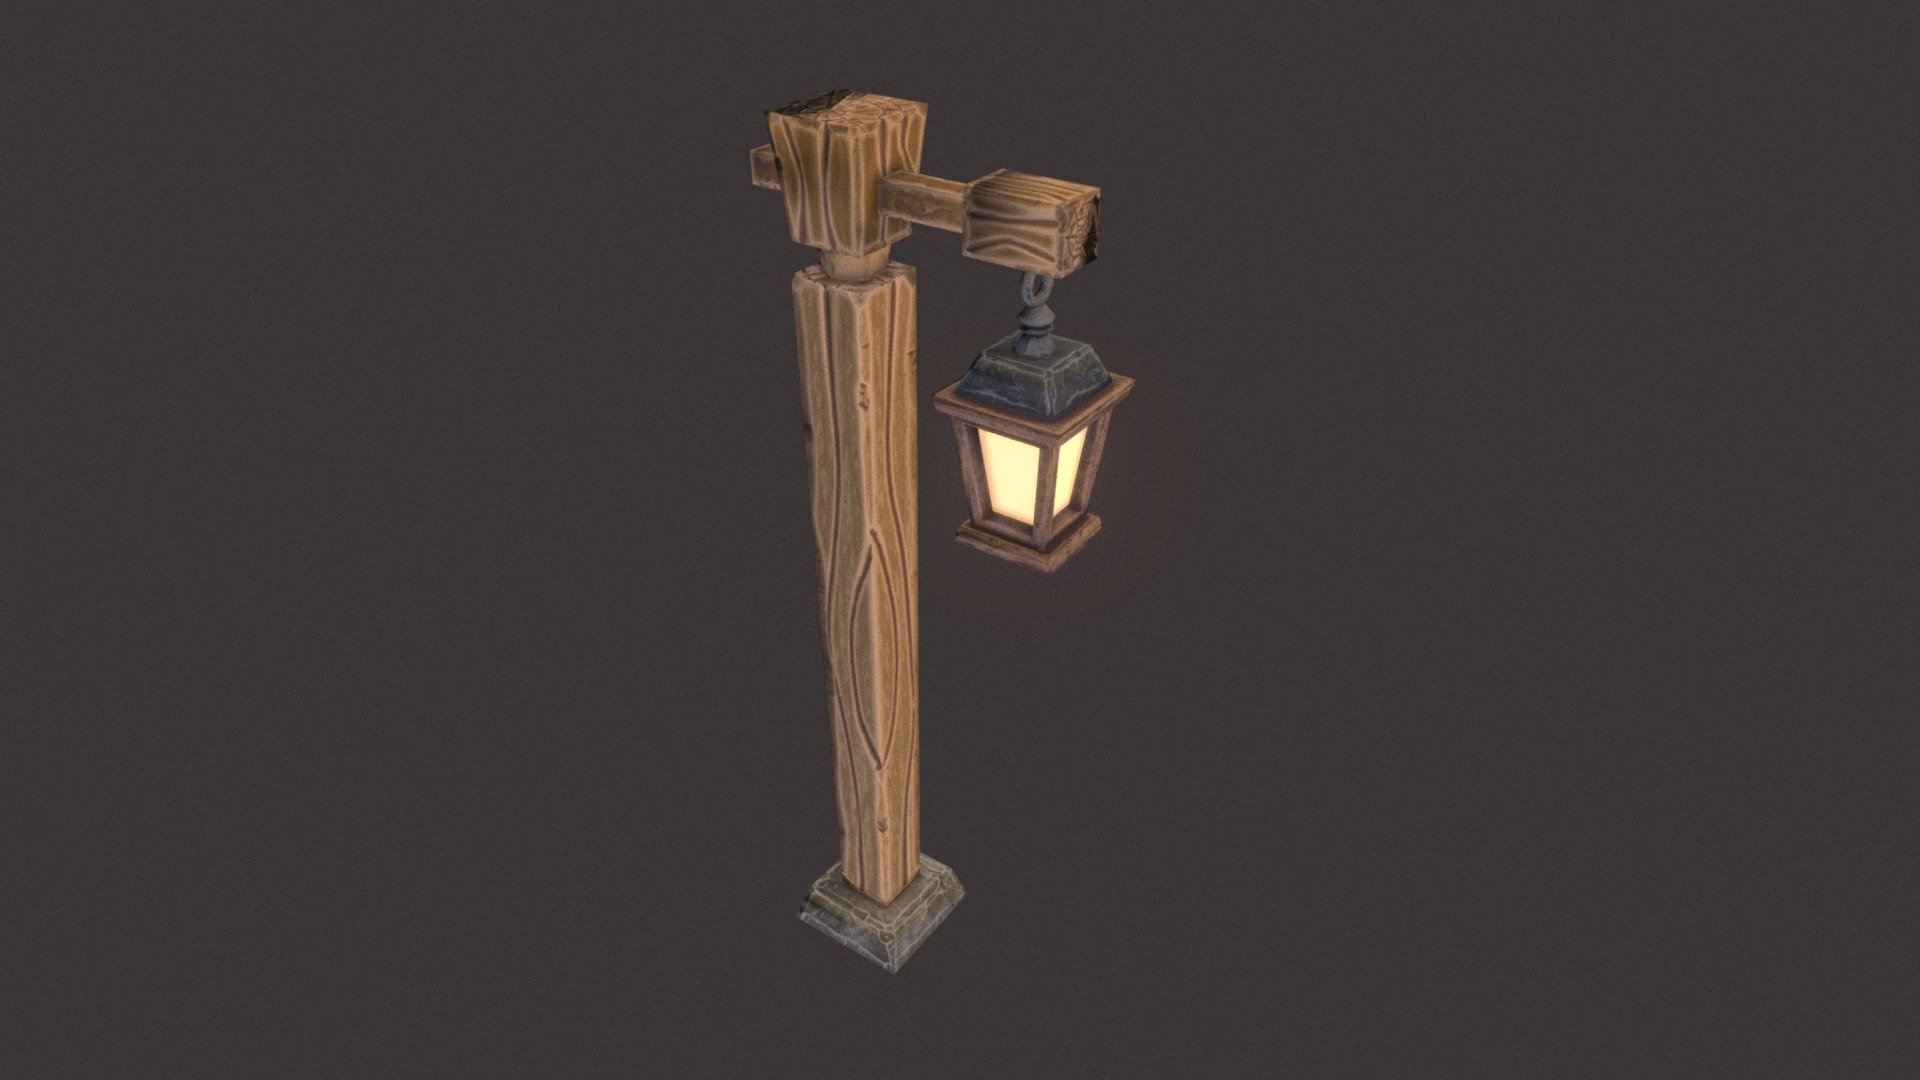 Lamp Post - 3D model by salmonclosebeta 3d model